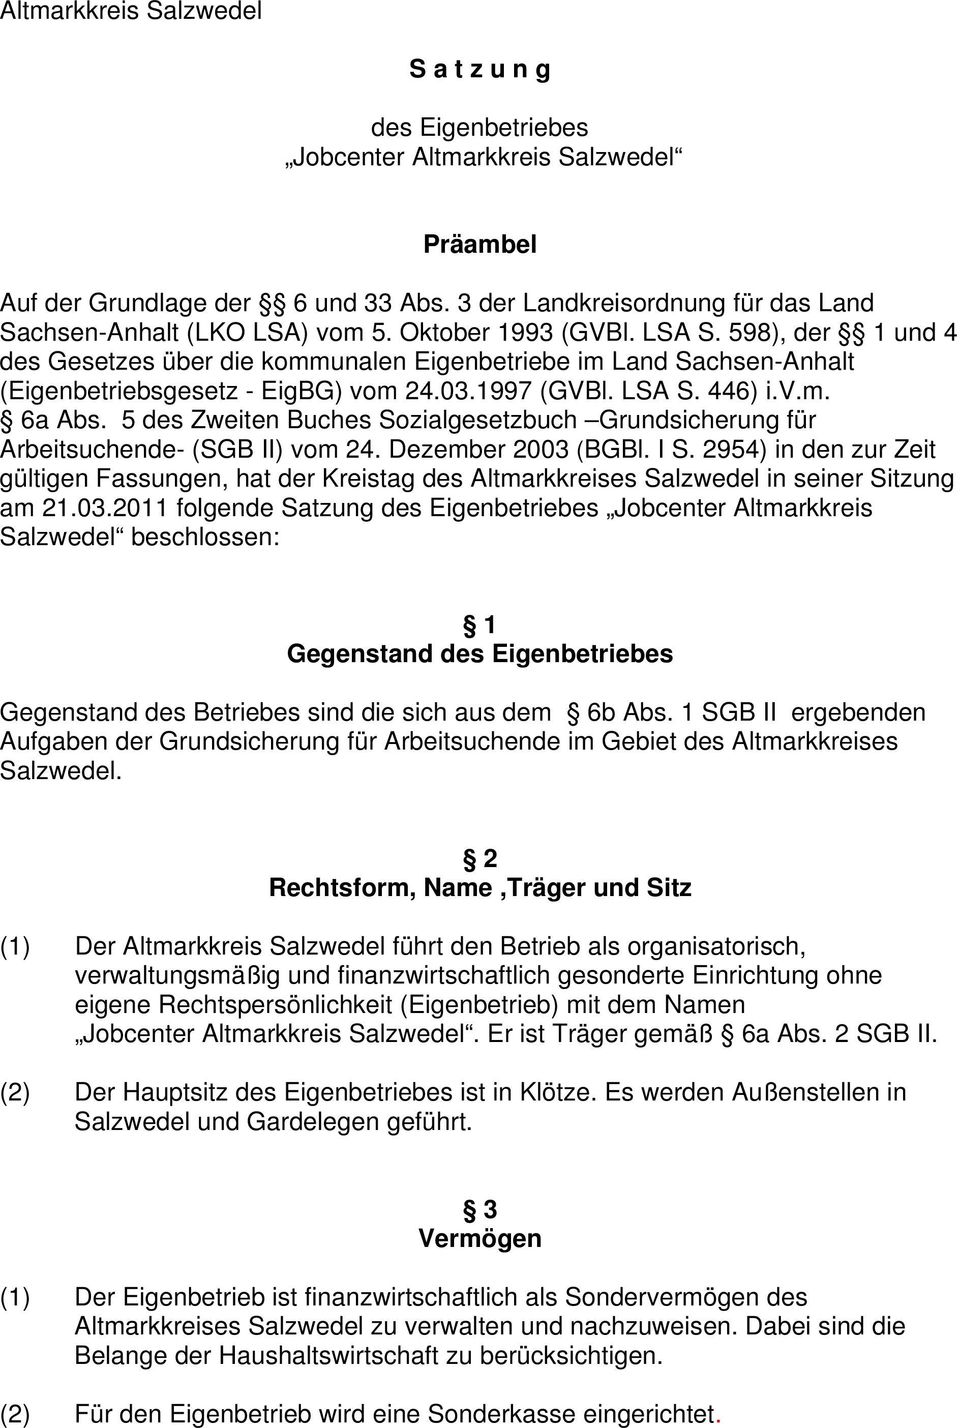 598), der 1 und 4 des Gesetzes über die kommunalen Eigenbetriebe im Land Sachsen-Anhalt (Eigenbetriebsgesetz - EigBG) vom 24.03.1997 (GVBl. LSA S. 446) i.v.m. 6a Abs.